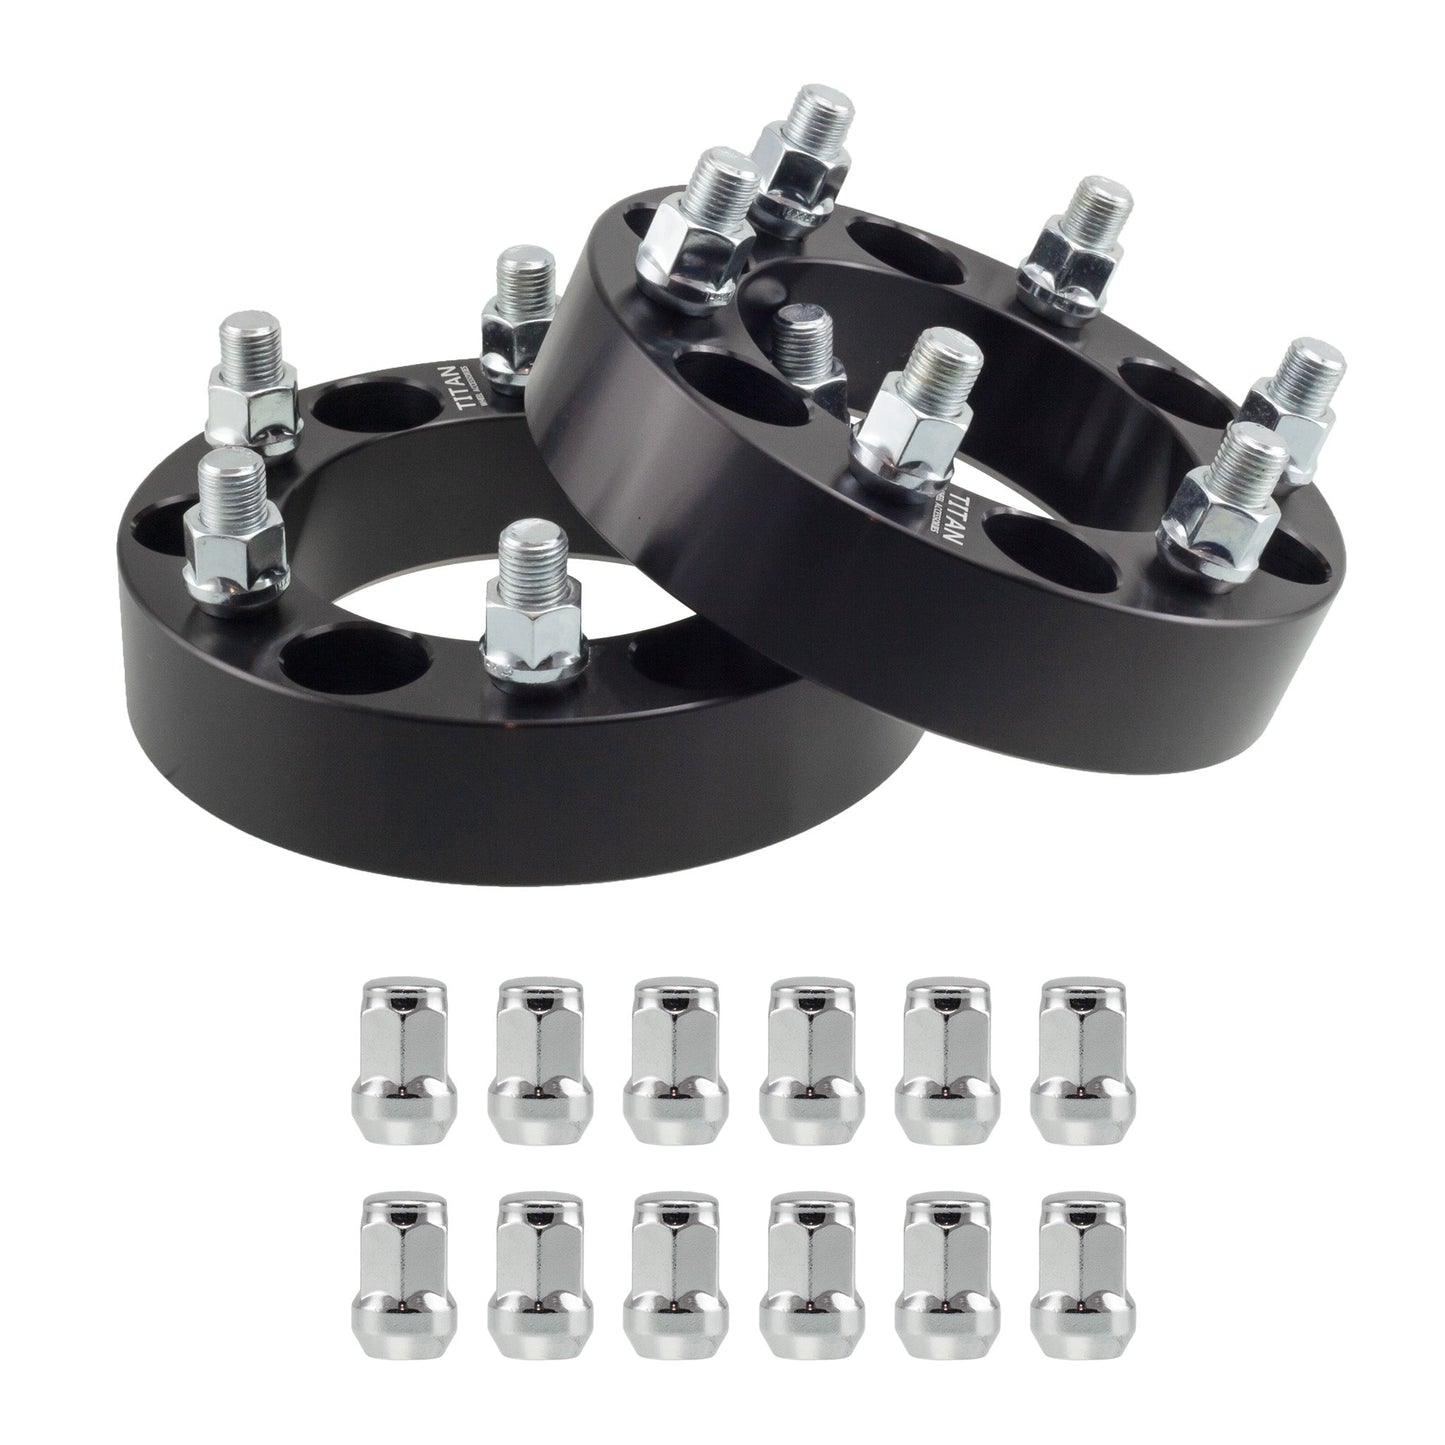 38mm (1.5") Titan Wheel Spacers for Infiniti QX56 Nissan Armada Titan | 6x5.5 (6x139.7) | 77.8 Hubcentric |12x1.25 Studs | Titan Wheel Accessories